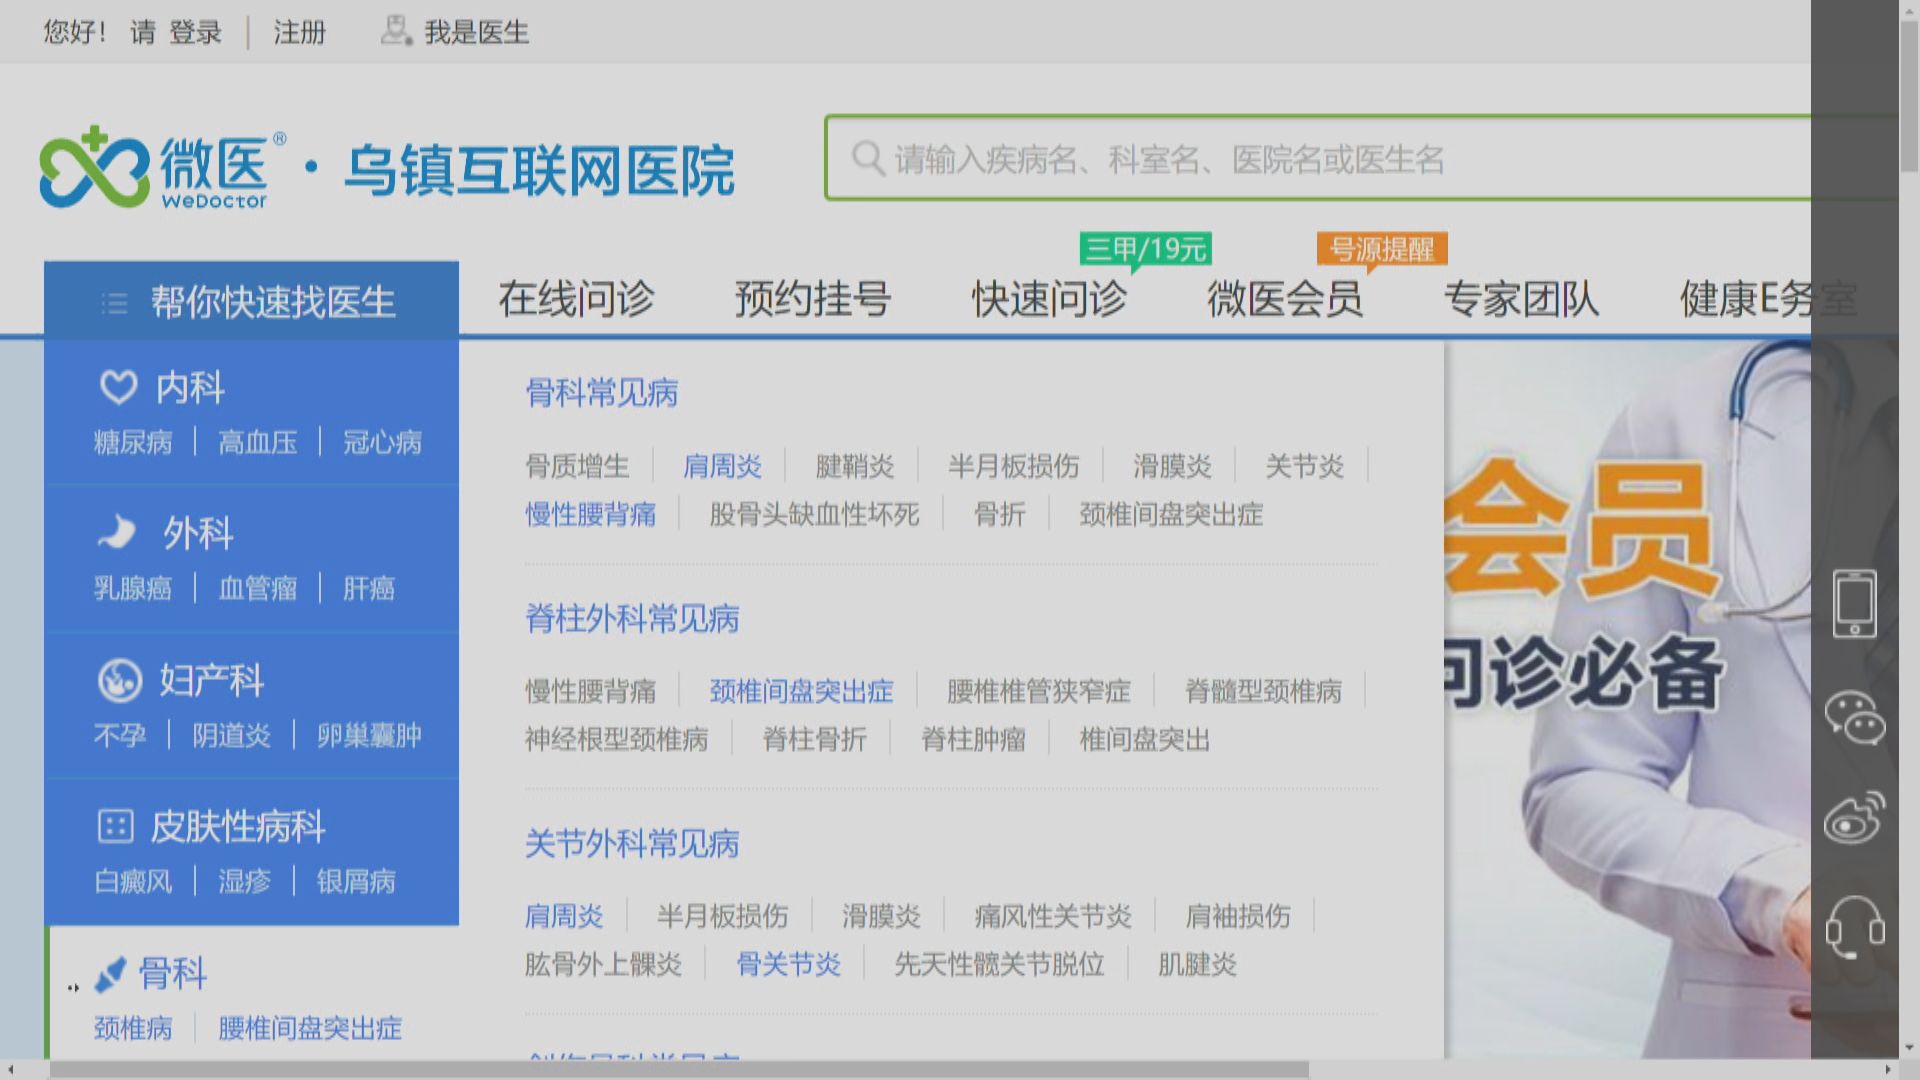 【新股消息】騰訊持股的微醫擬4月底前遞交上市申請